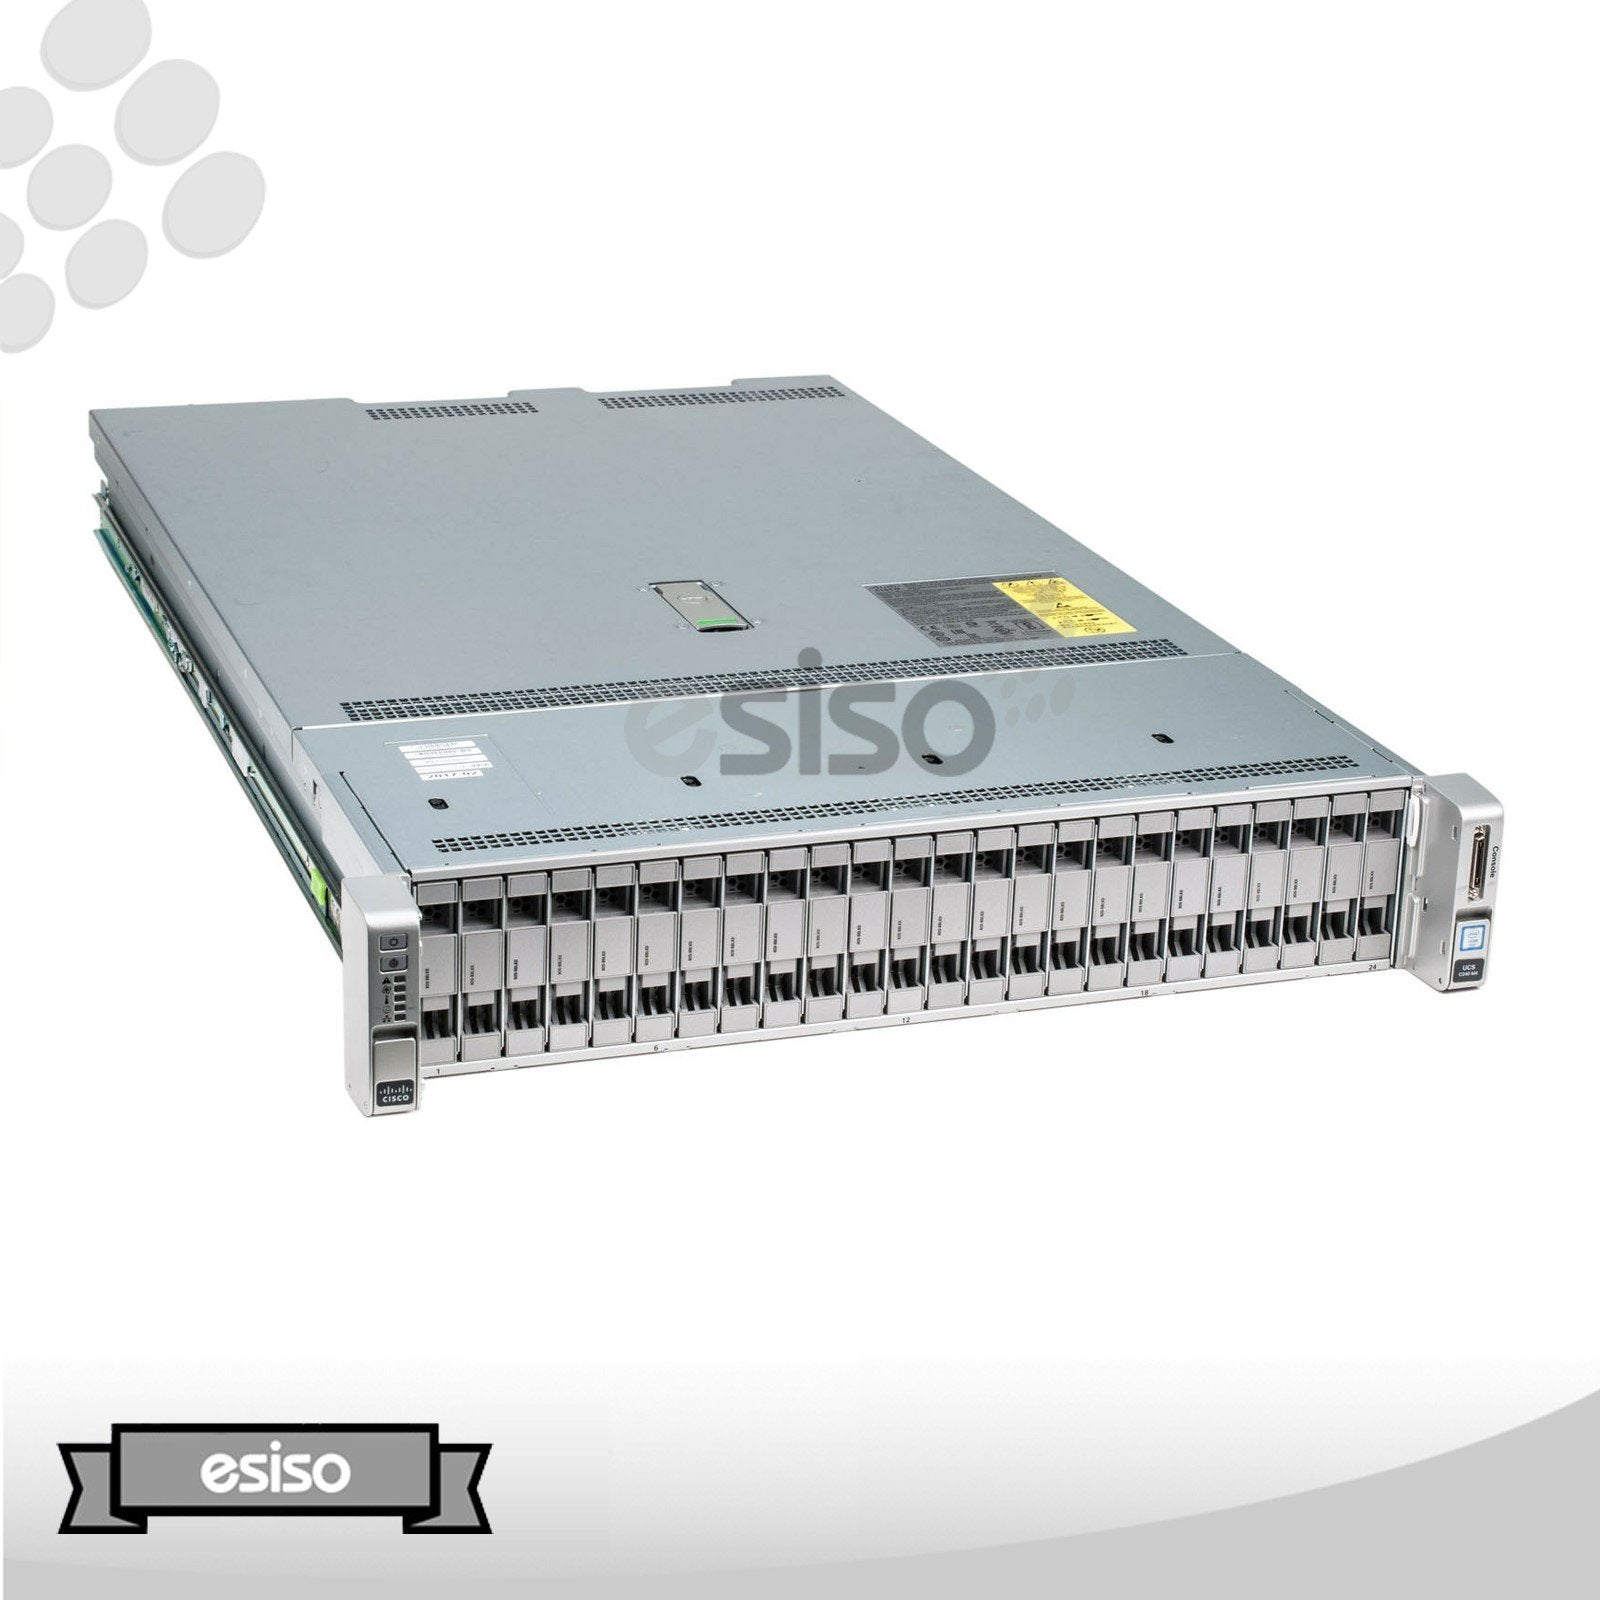 CISCO UCS C240 M4 24SFF 2x 12CORE E5-2650V4 2.2GHz 512GB RAM 24x TRAY RAIL